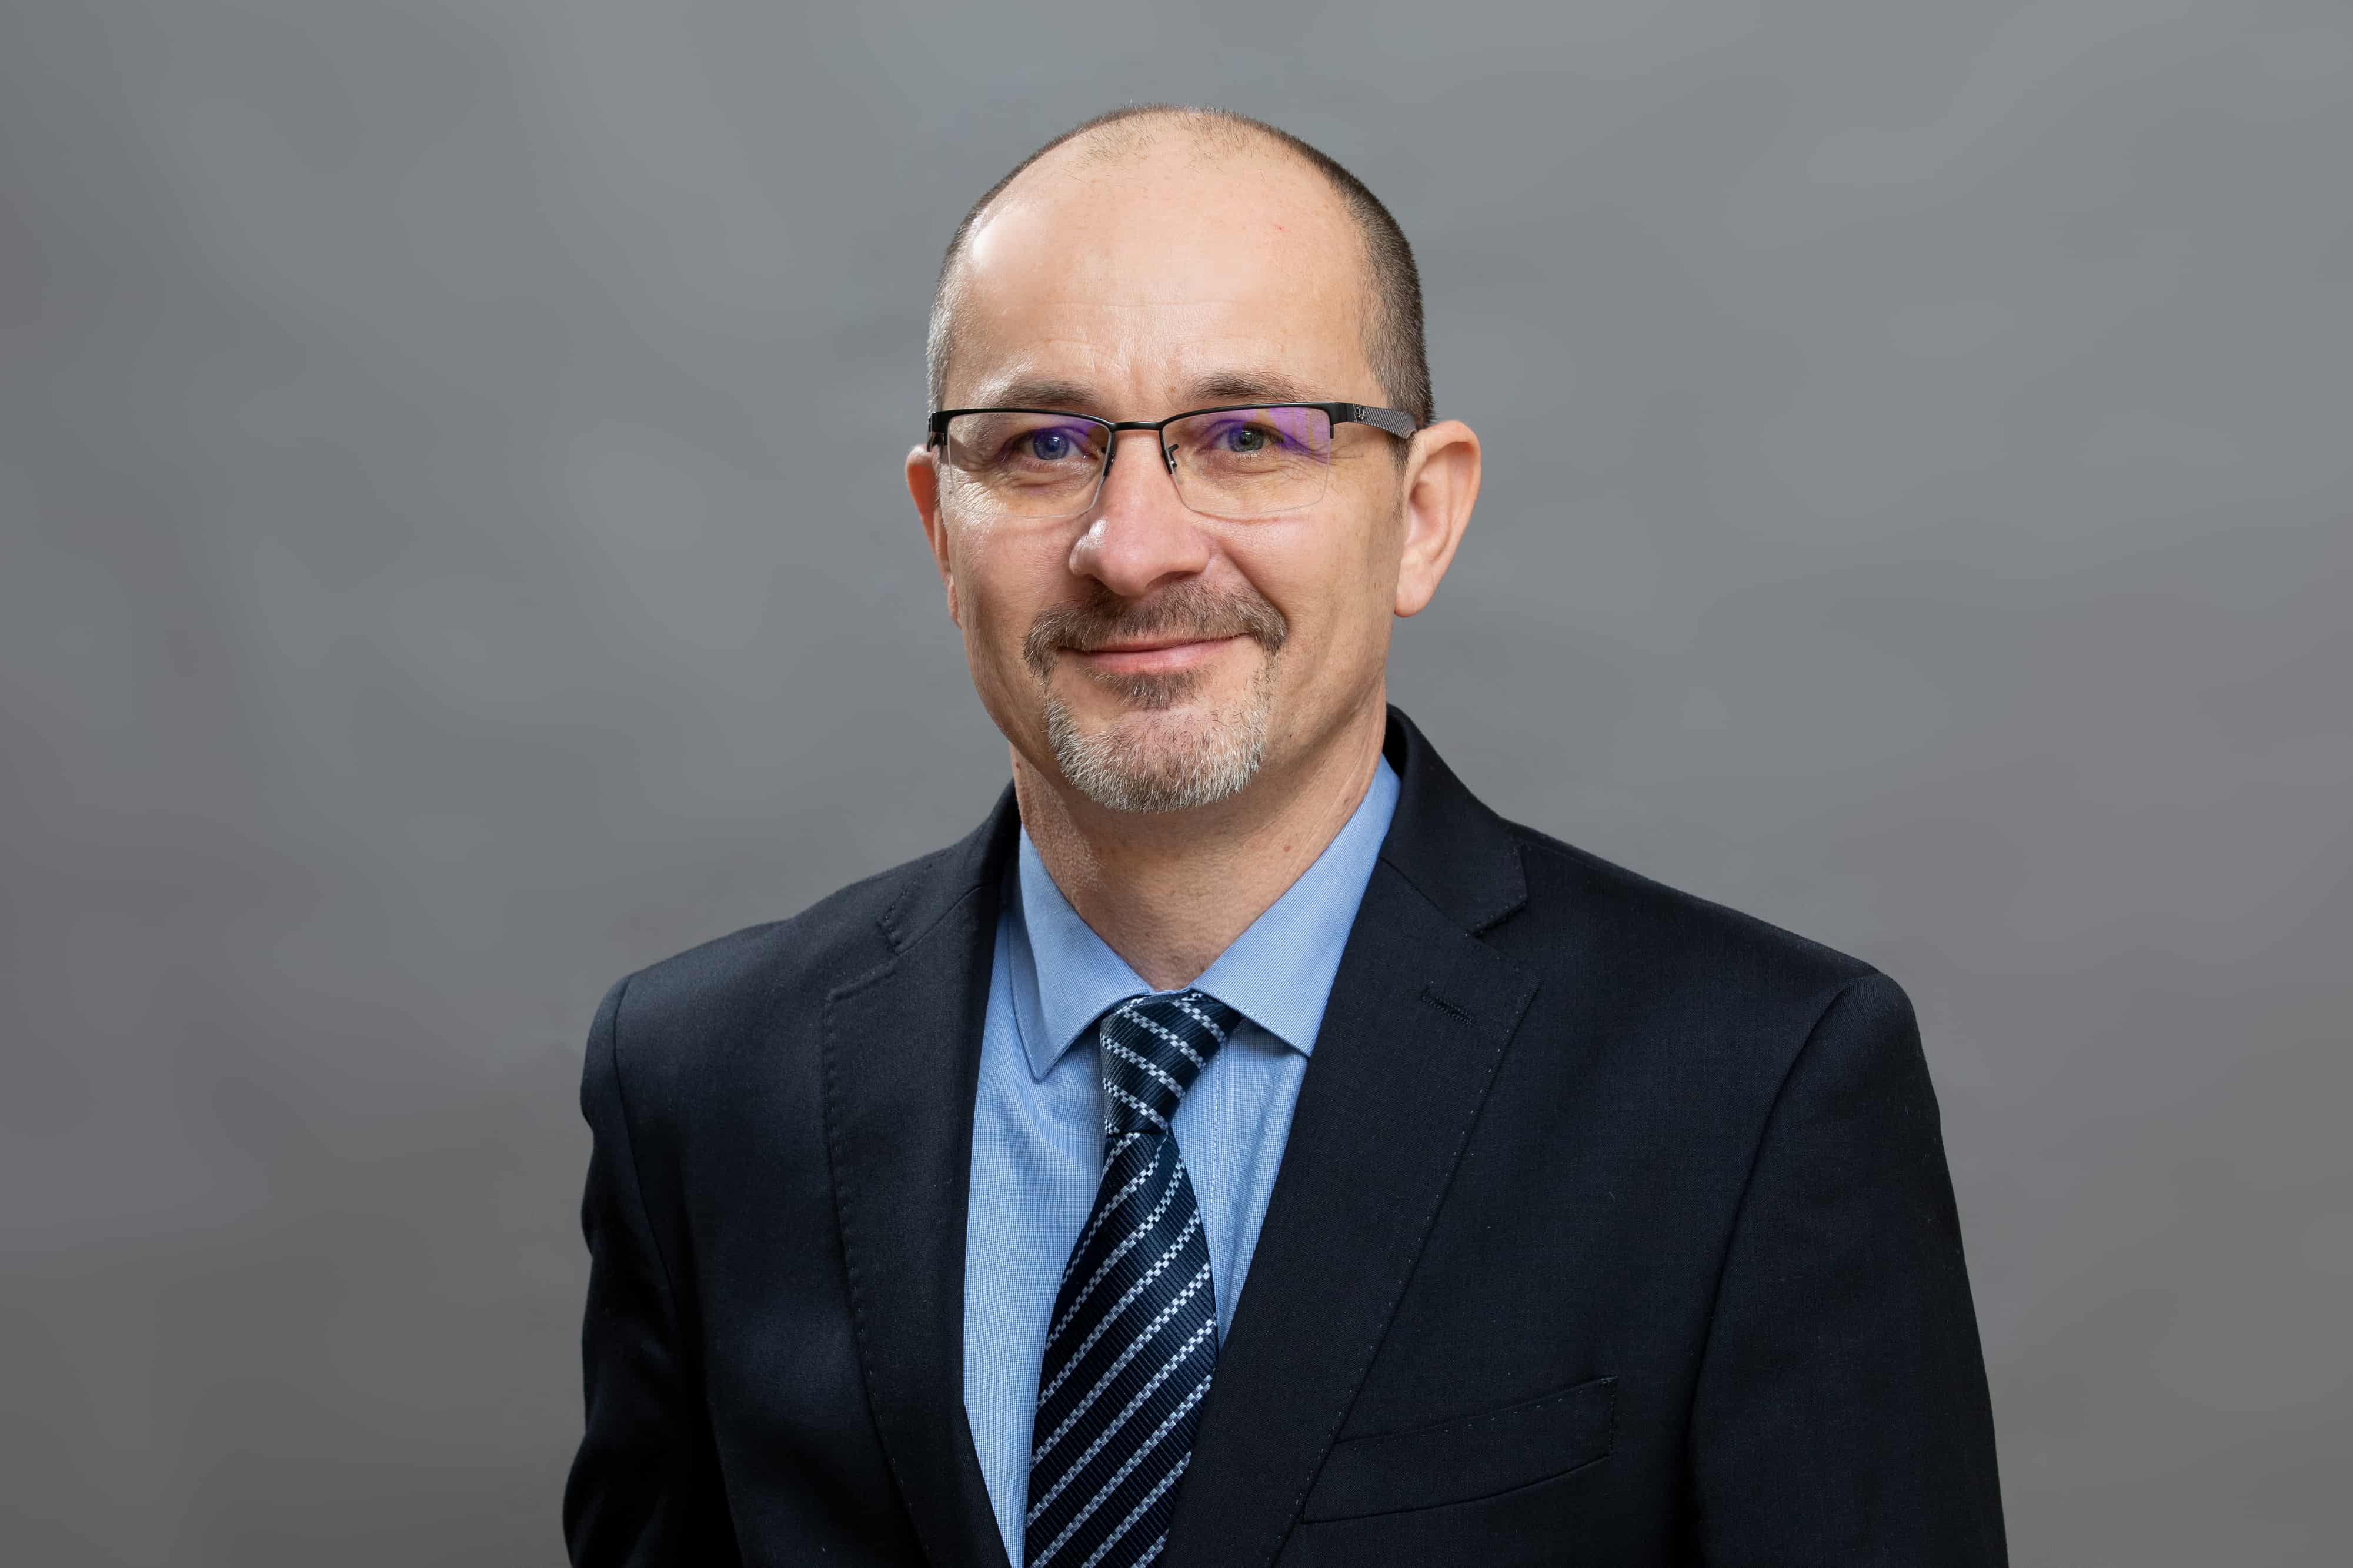  Gregory Kamphuis - Operations Director Switzerland 